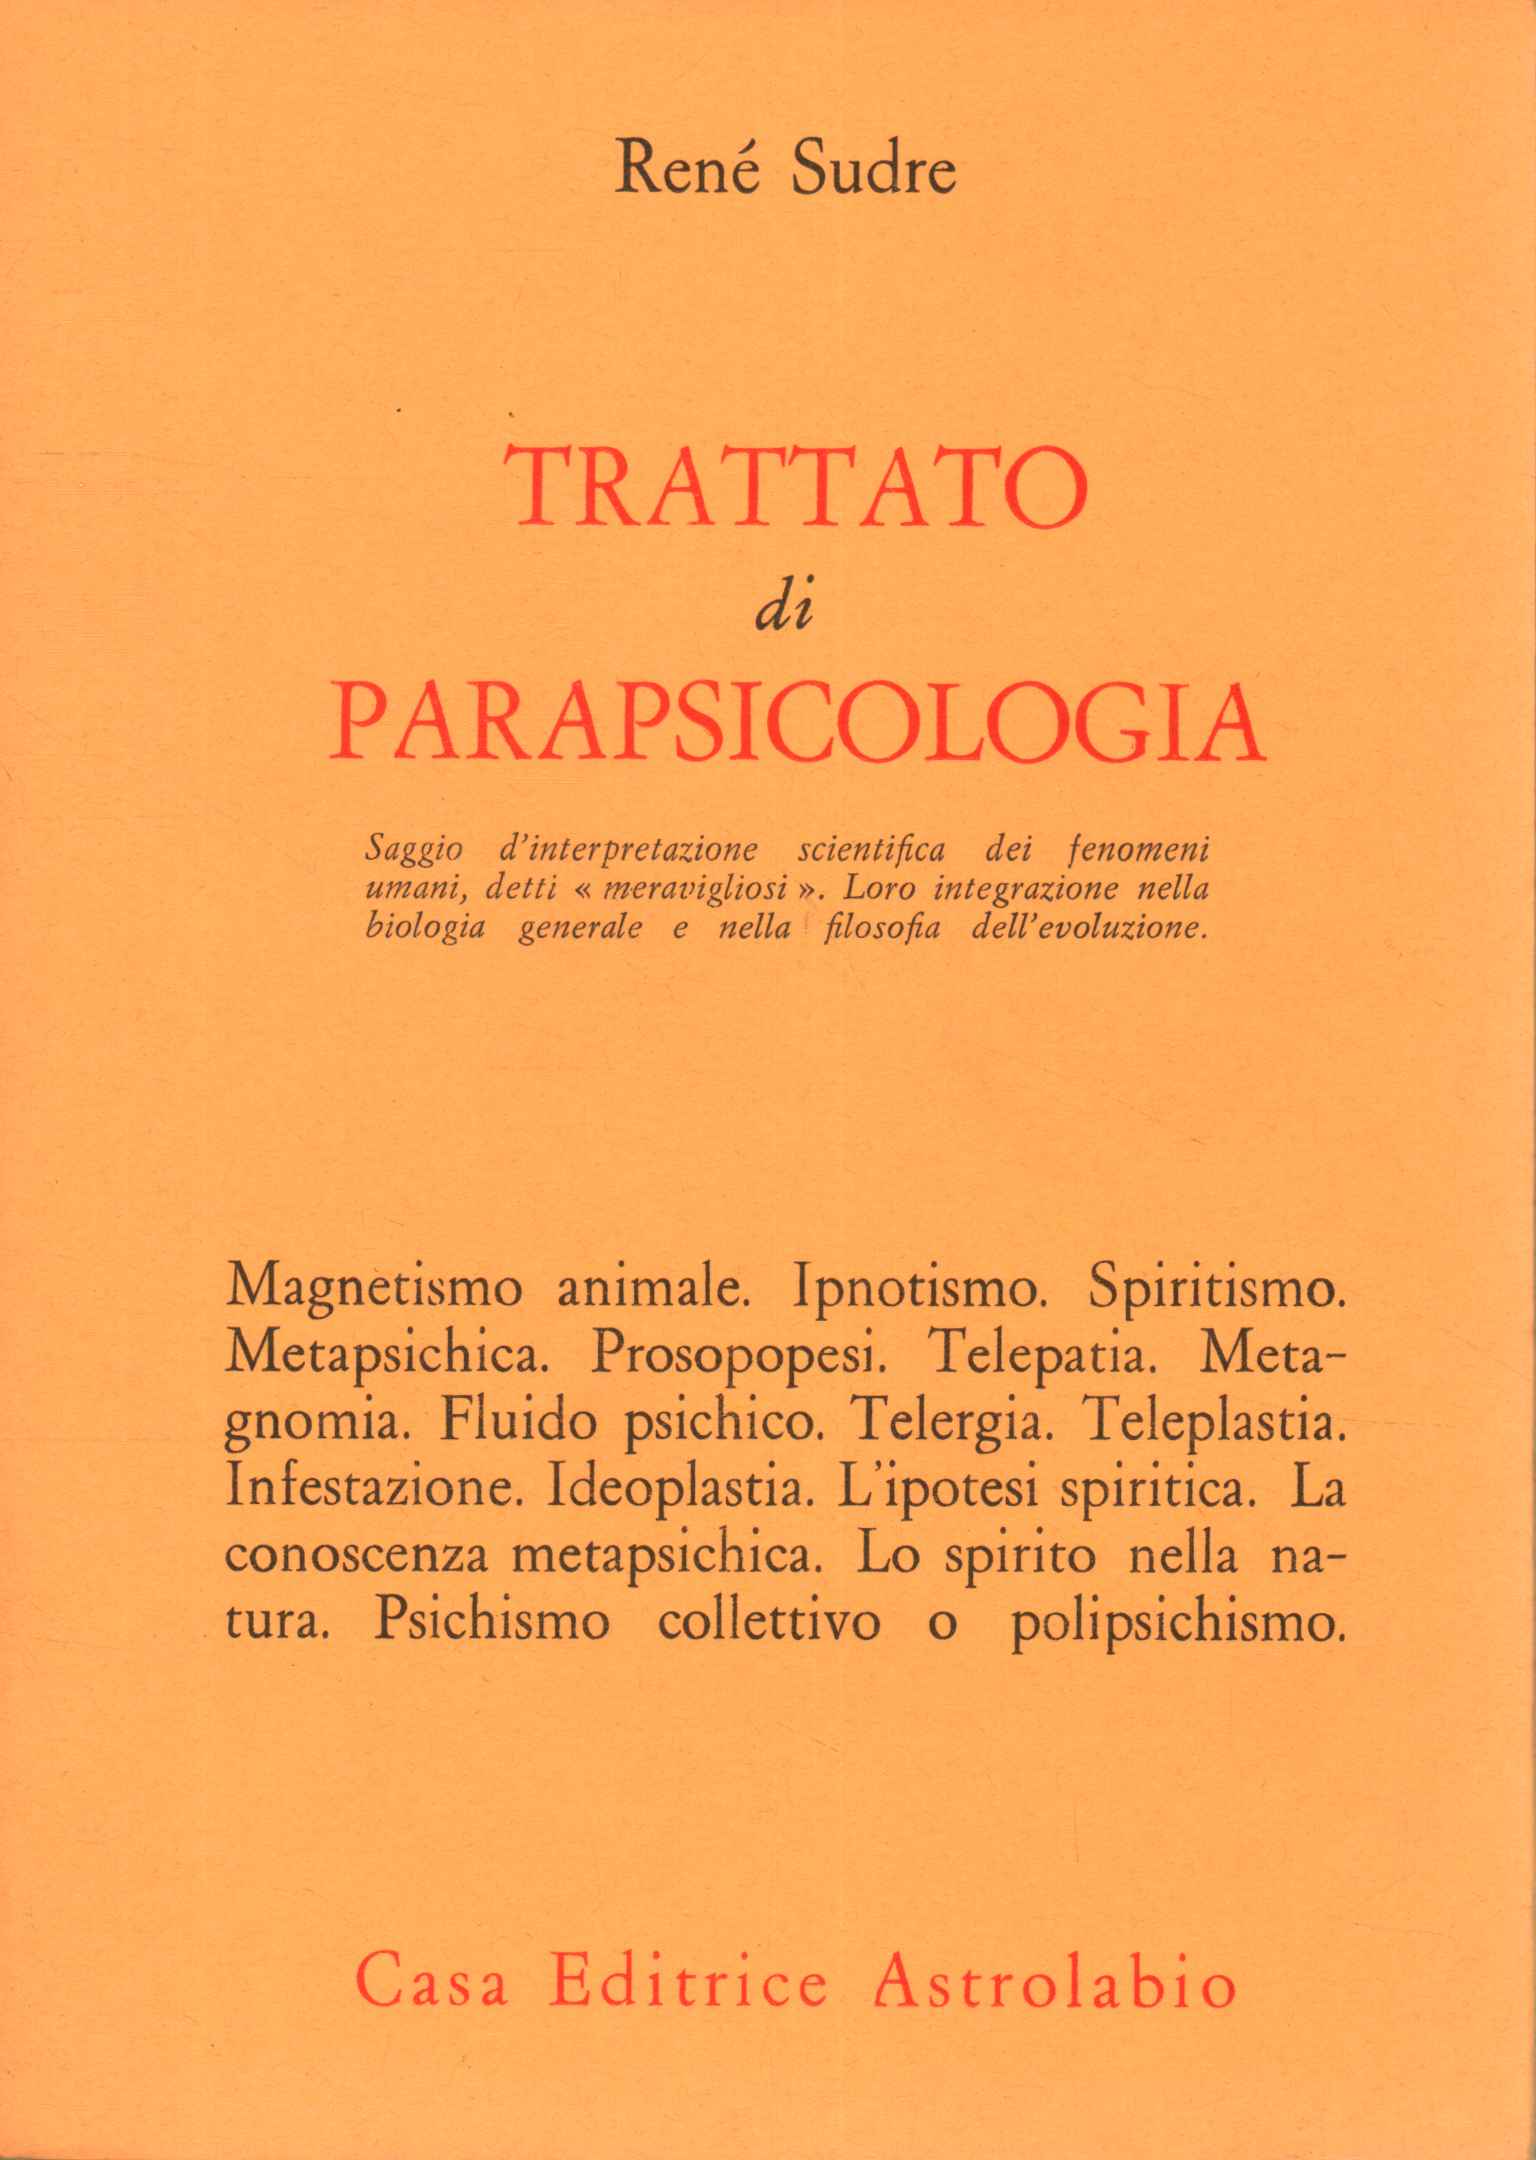 Tratado de parapsicología